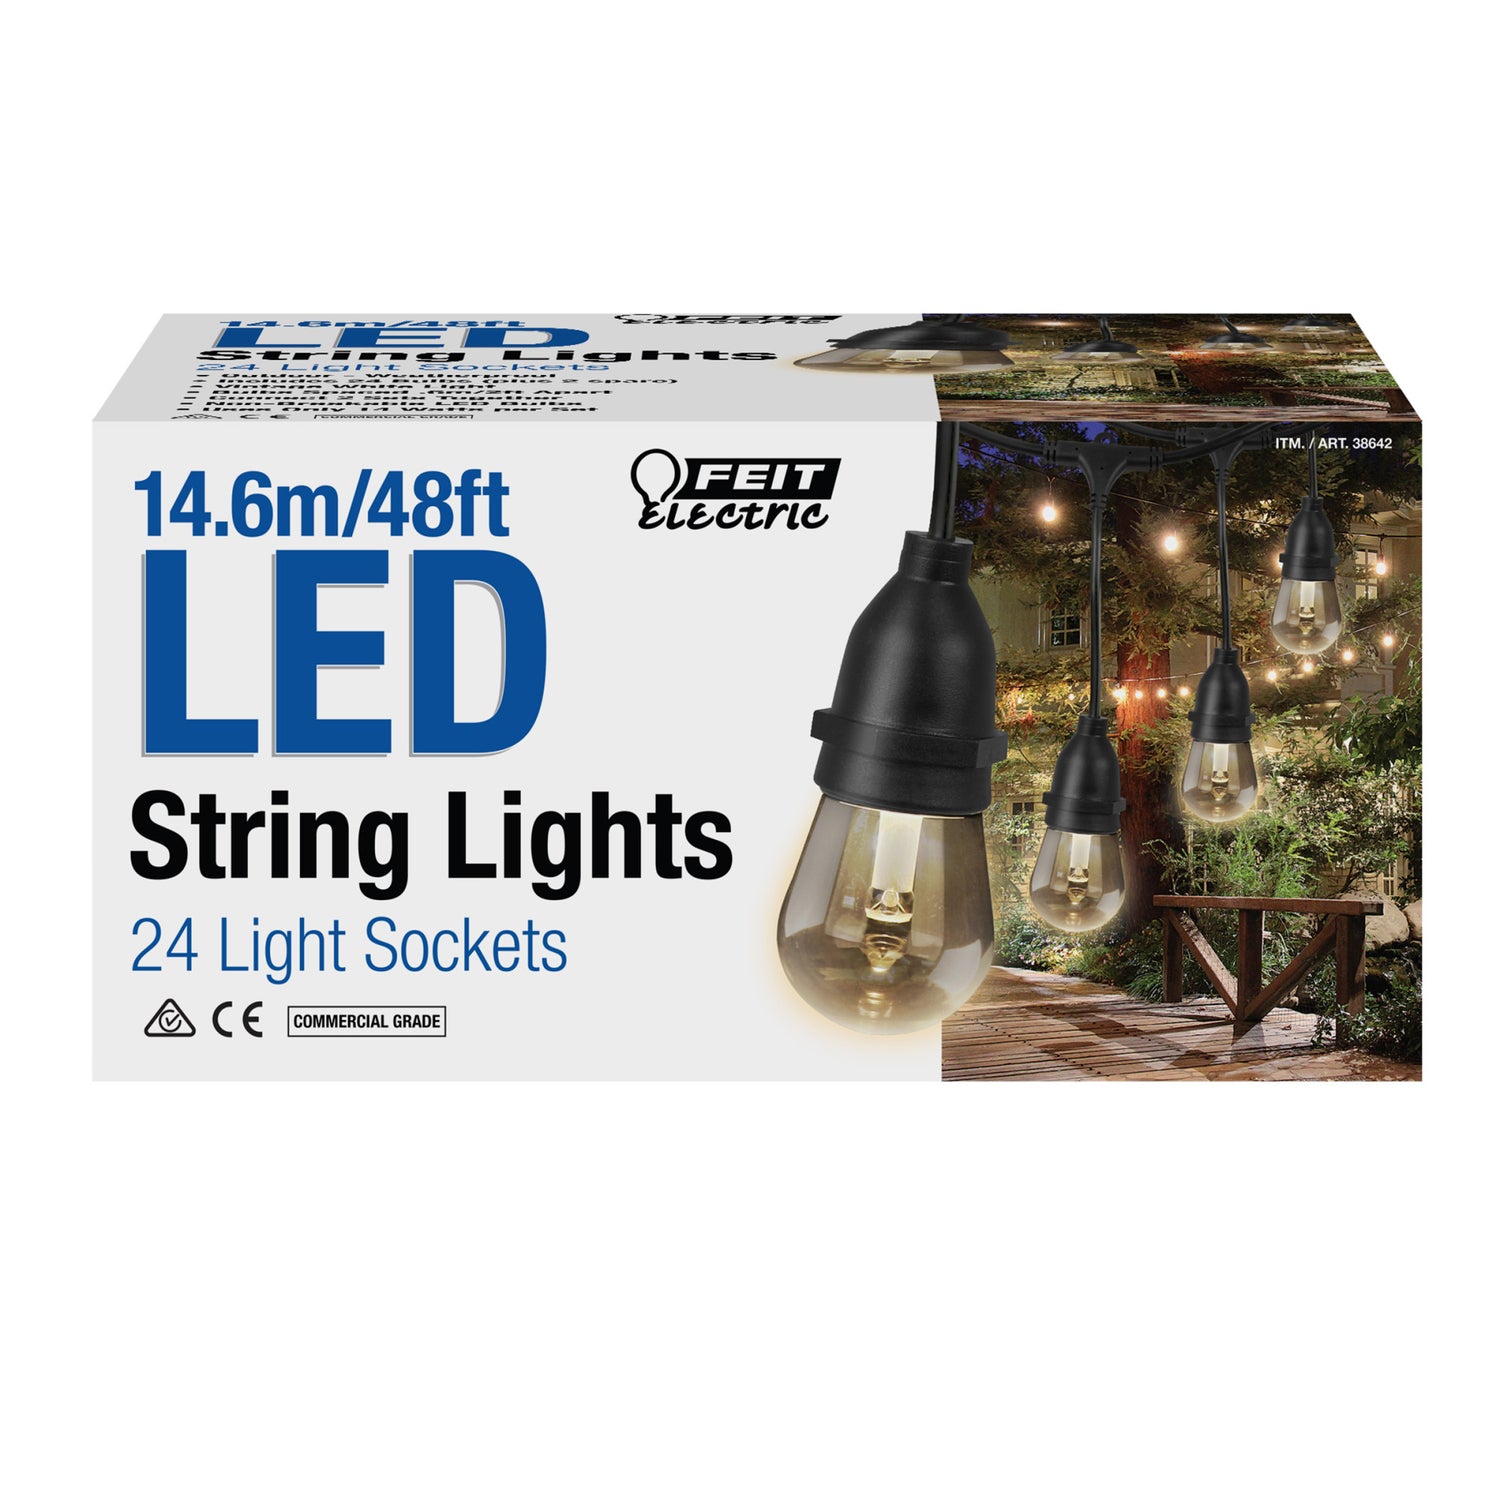 14.6m Heavy-Duty Indoor Outdoor String Lights